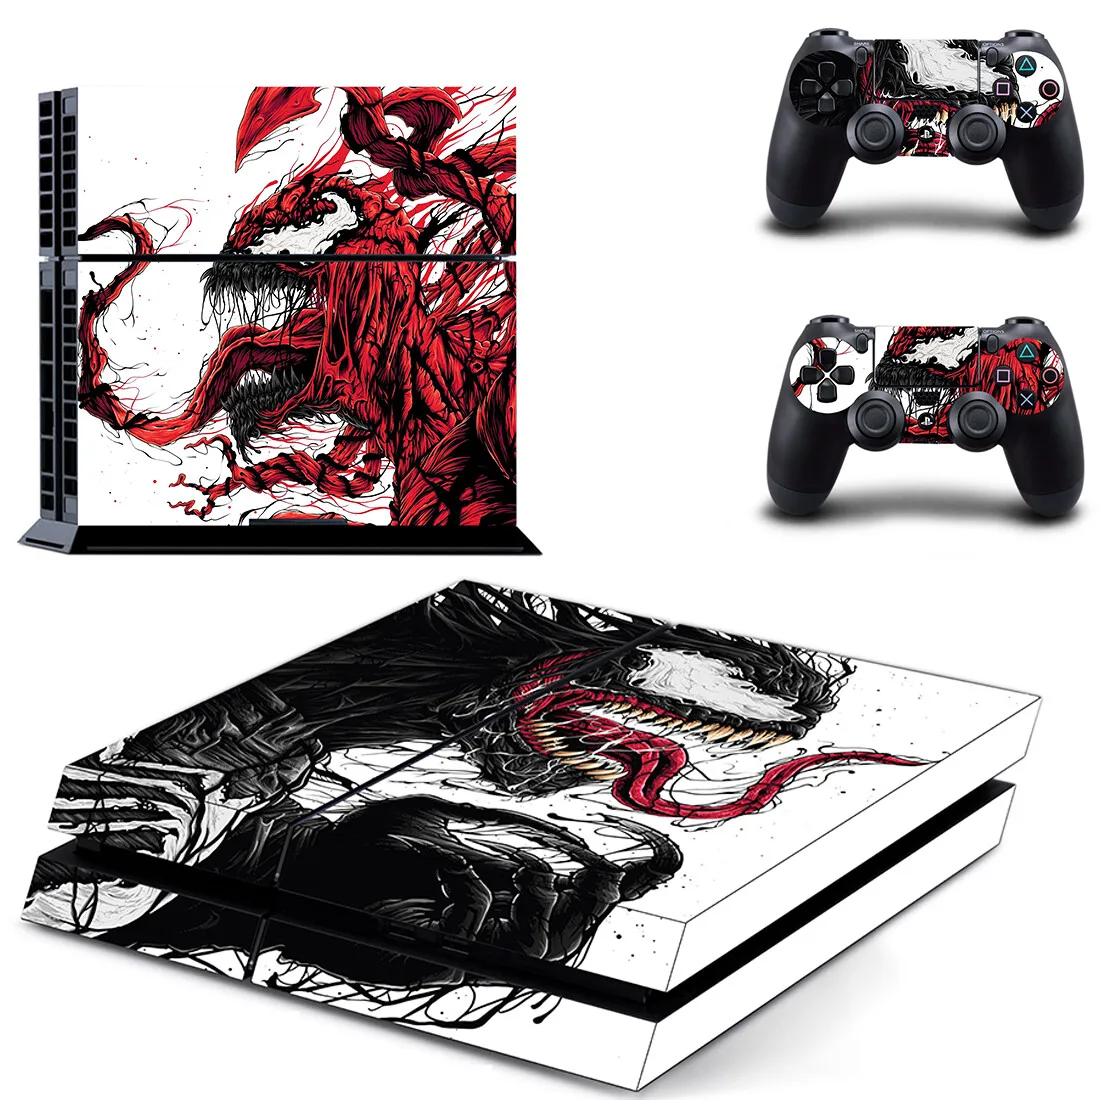 

Пленка Venom PS4 стикер s Play station 4 наклейки для PlayStation 4 PS4 консоль и контроллер Скины Виниловые